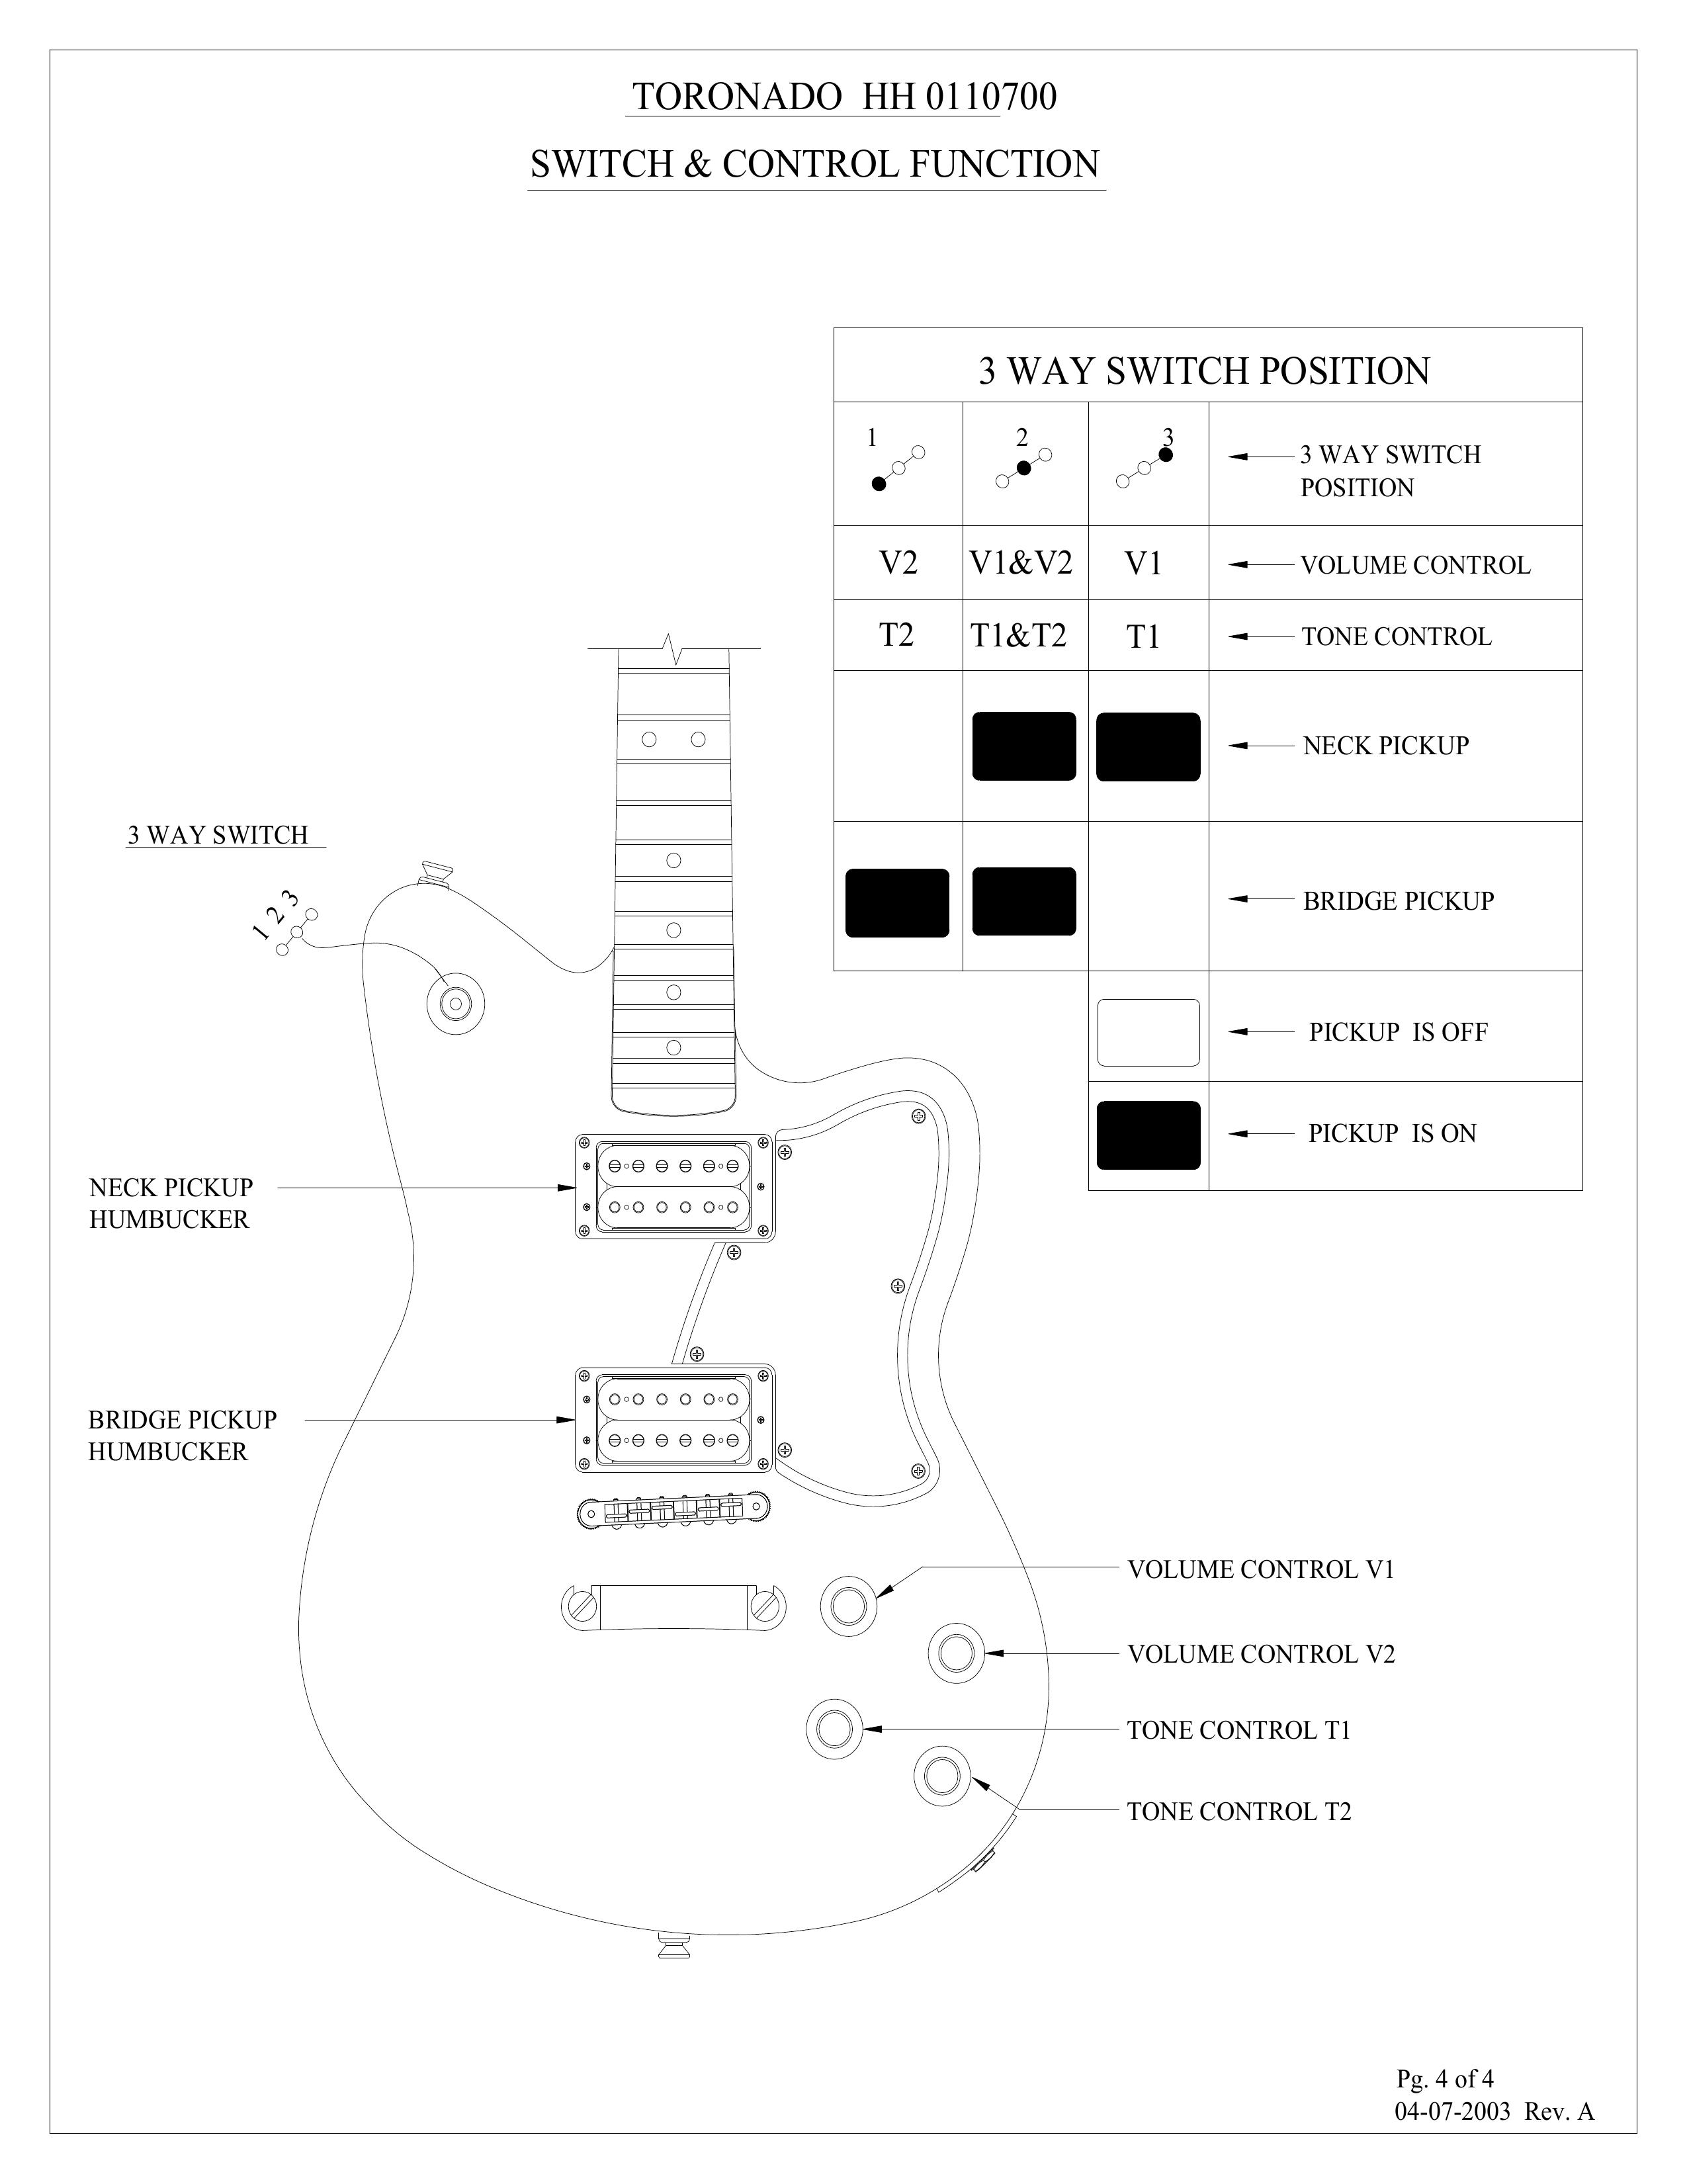 Tornado HH 0110700 Guitar User Manual